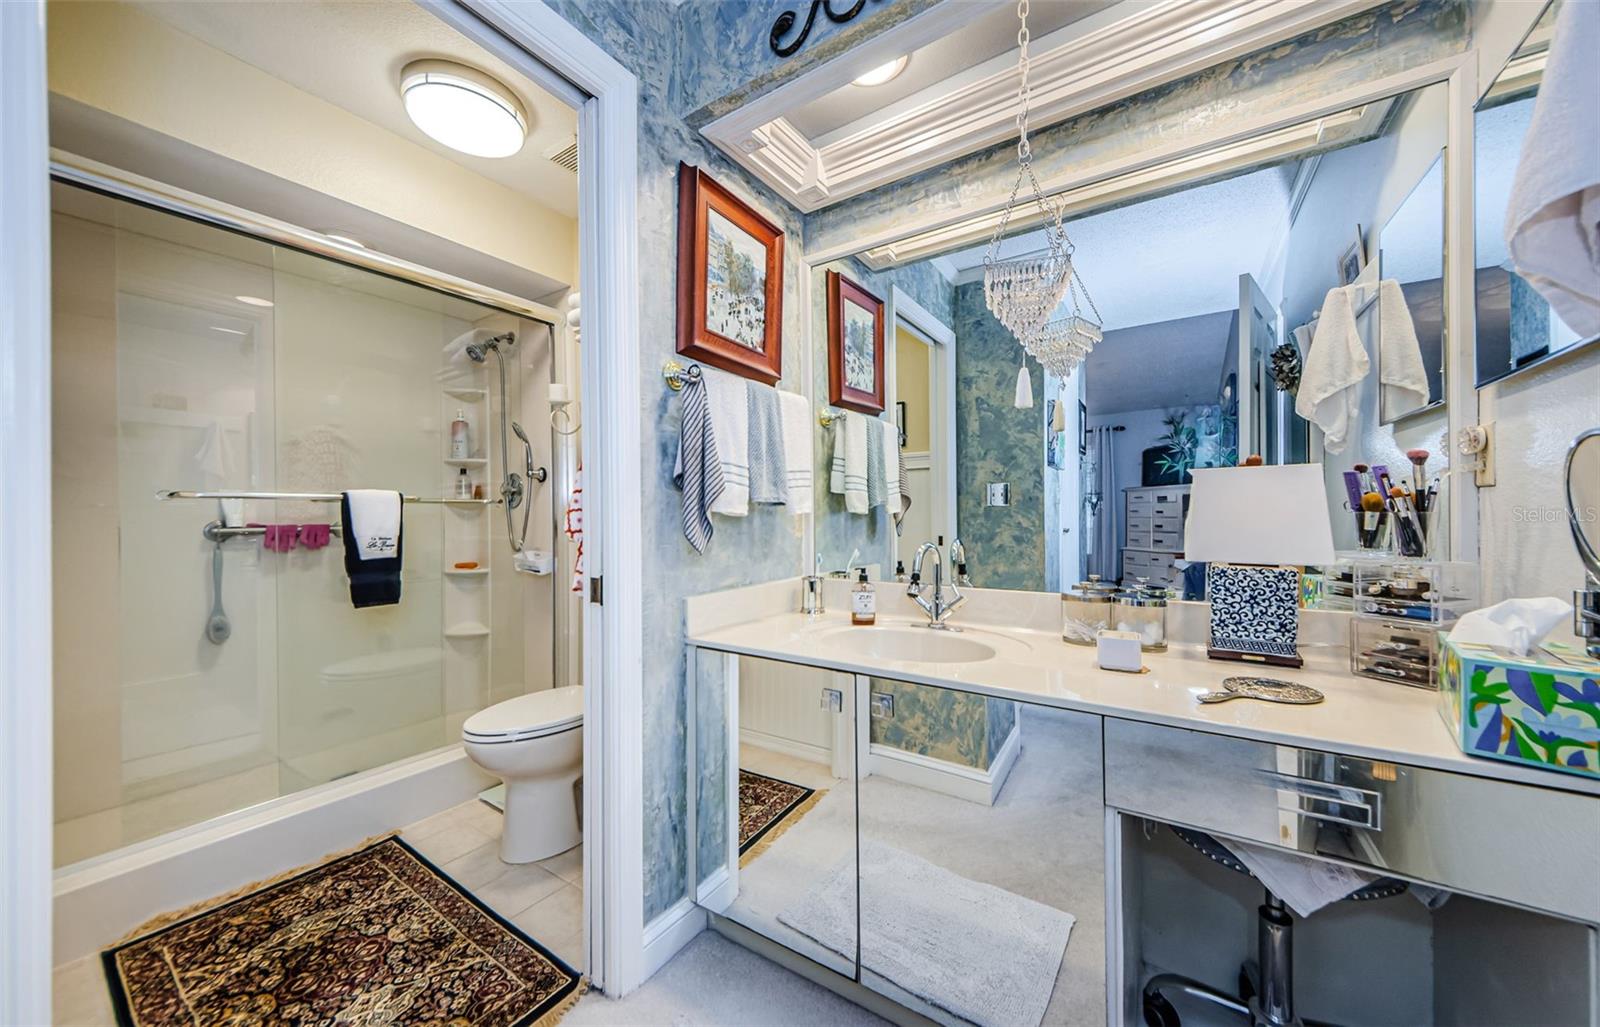 Master vanity area with pocket door to shower with glass doors